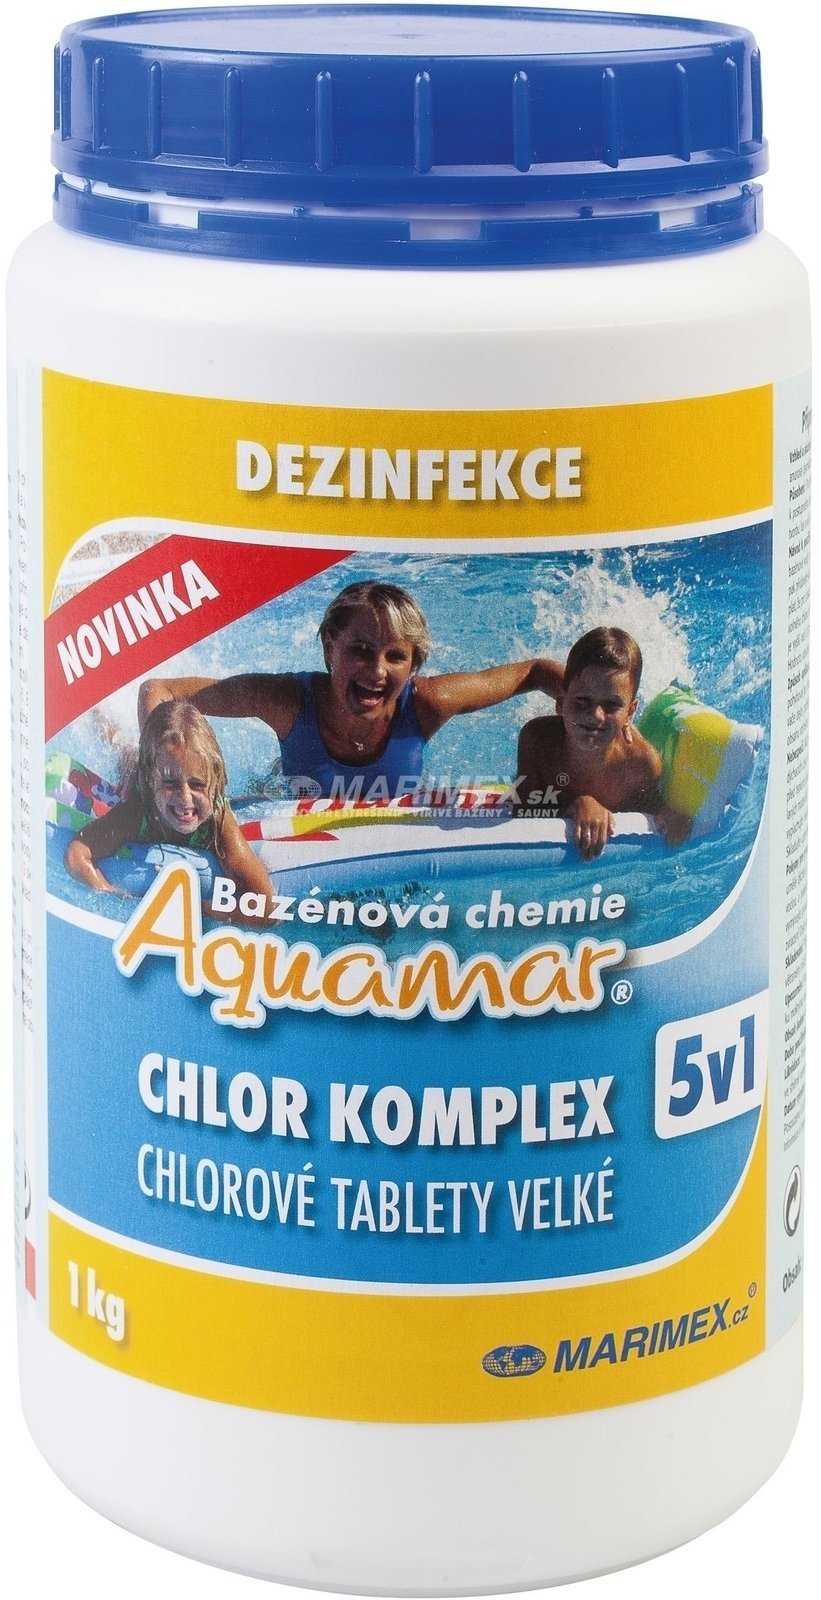 Produits chimiques de piscine Marimex AQuaMar Komplex 5v1 1.0 kg